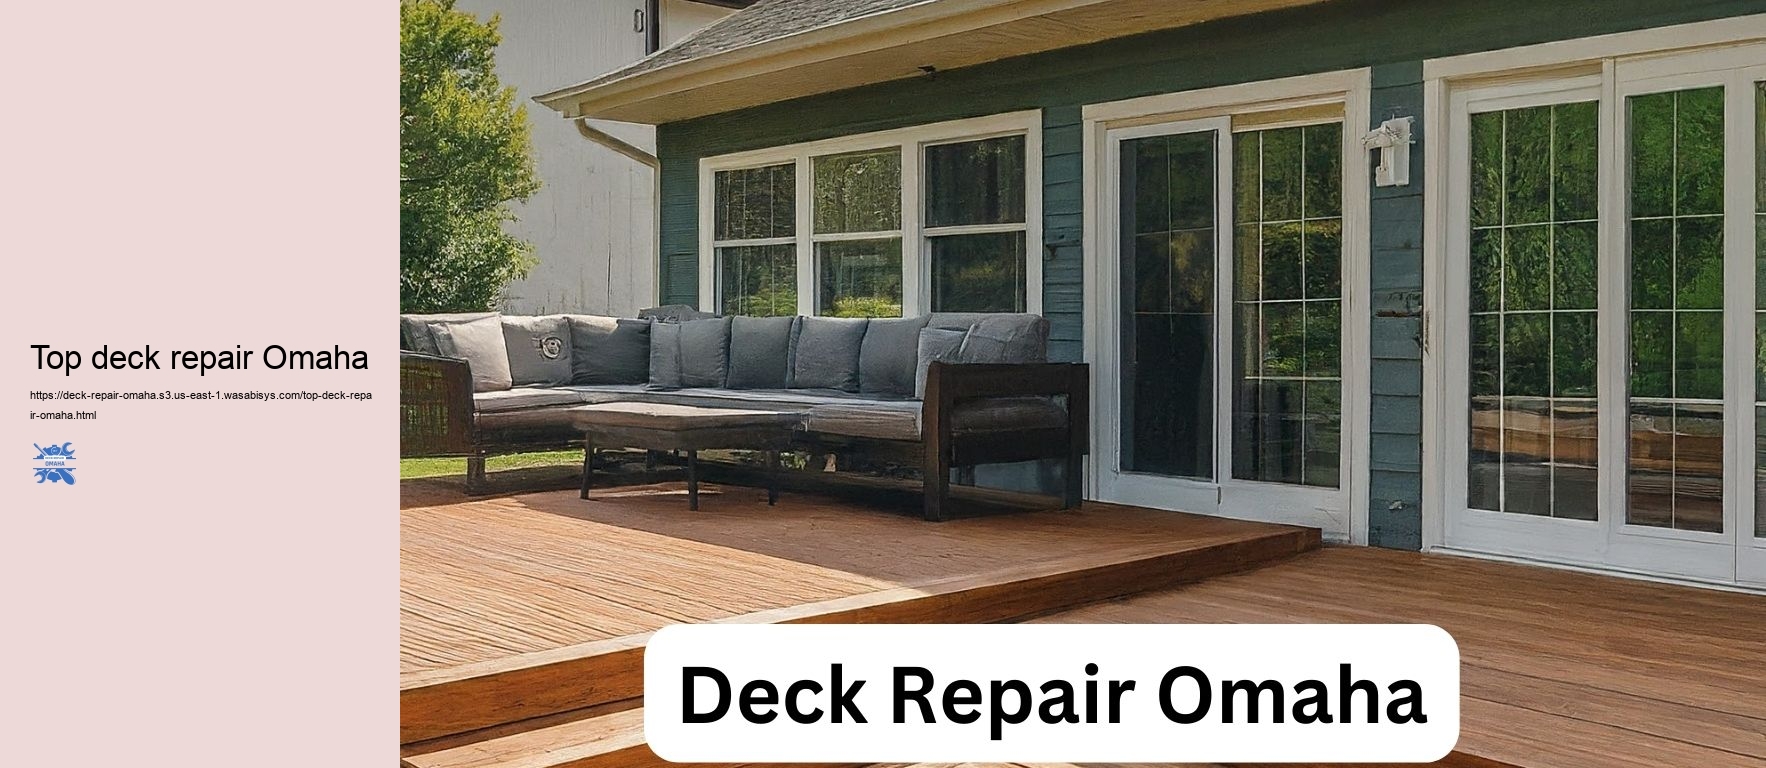 Top deck repair Omaha